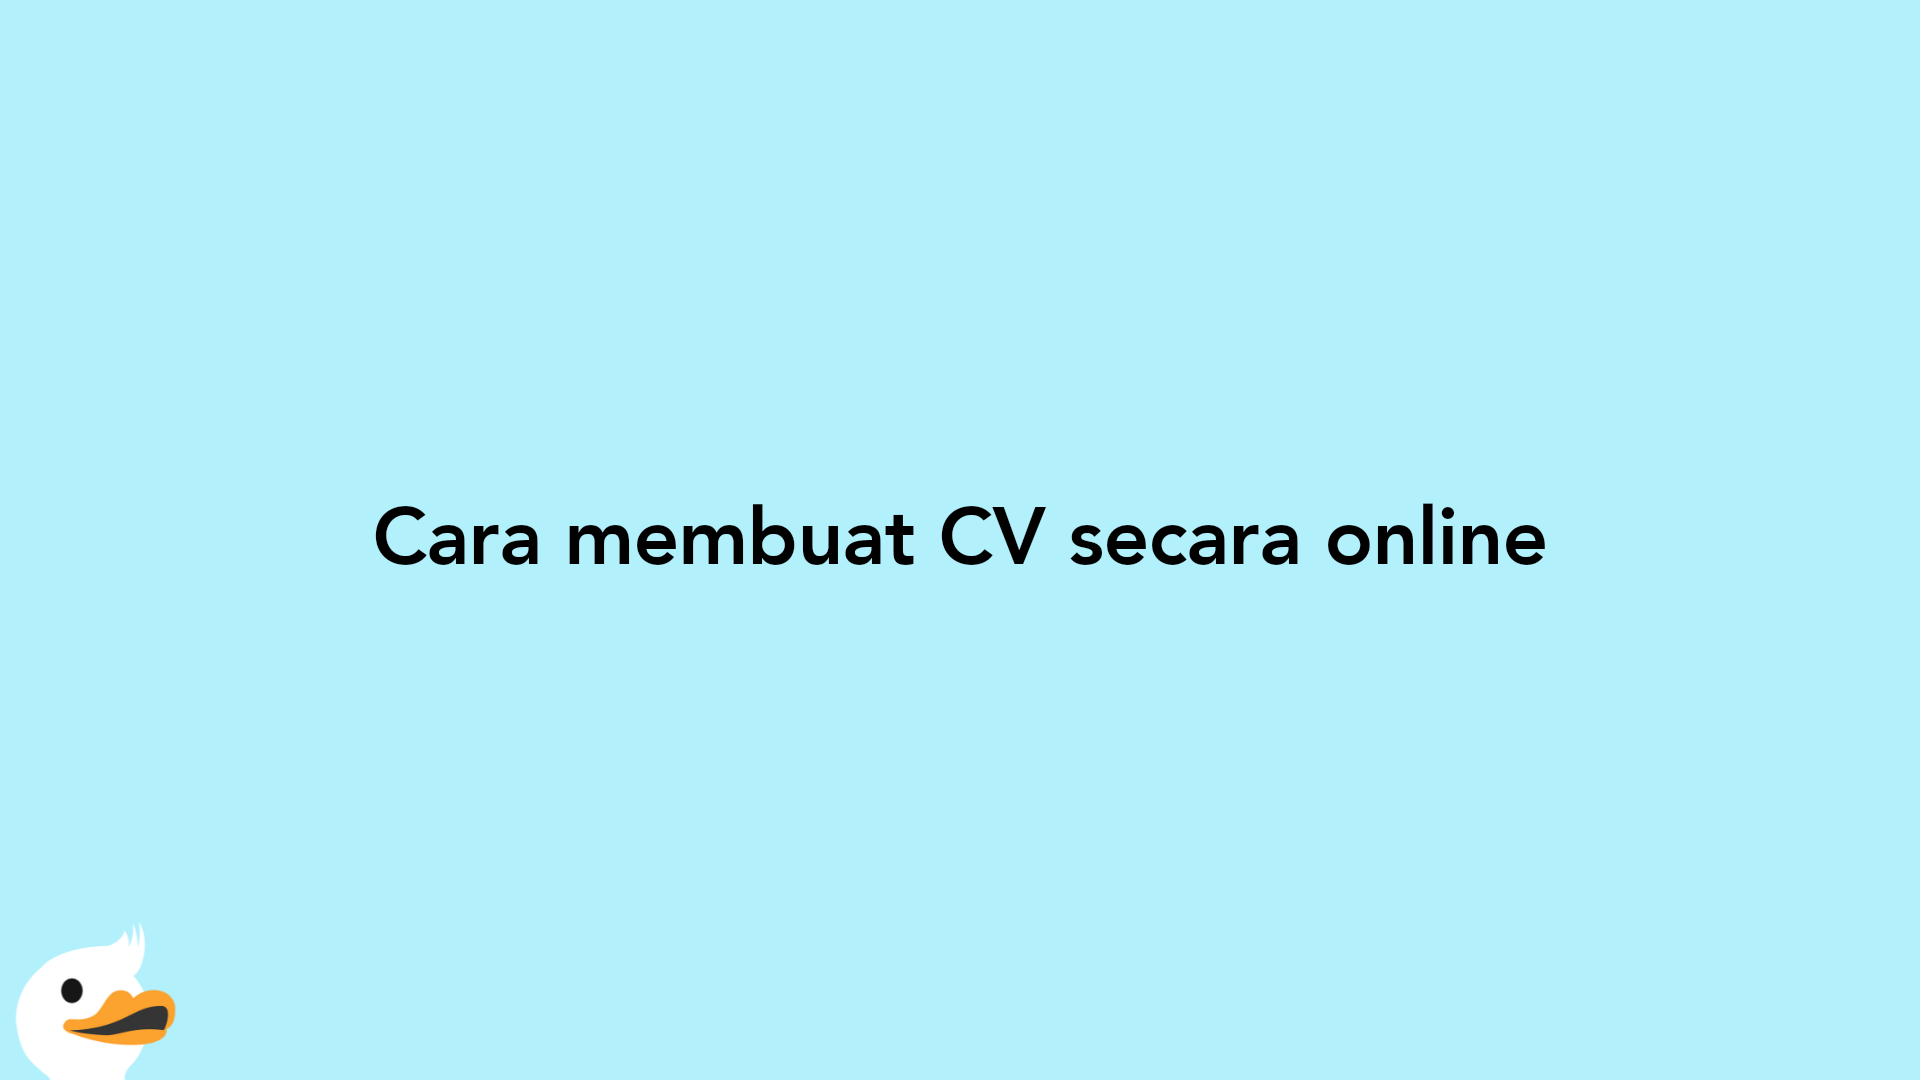 Cara membuat CV secara online